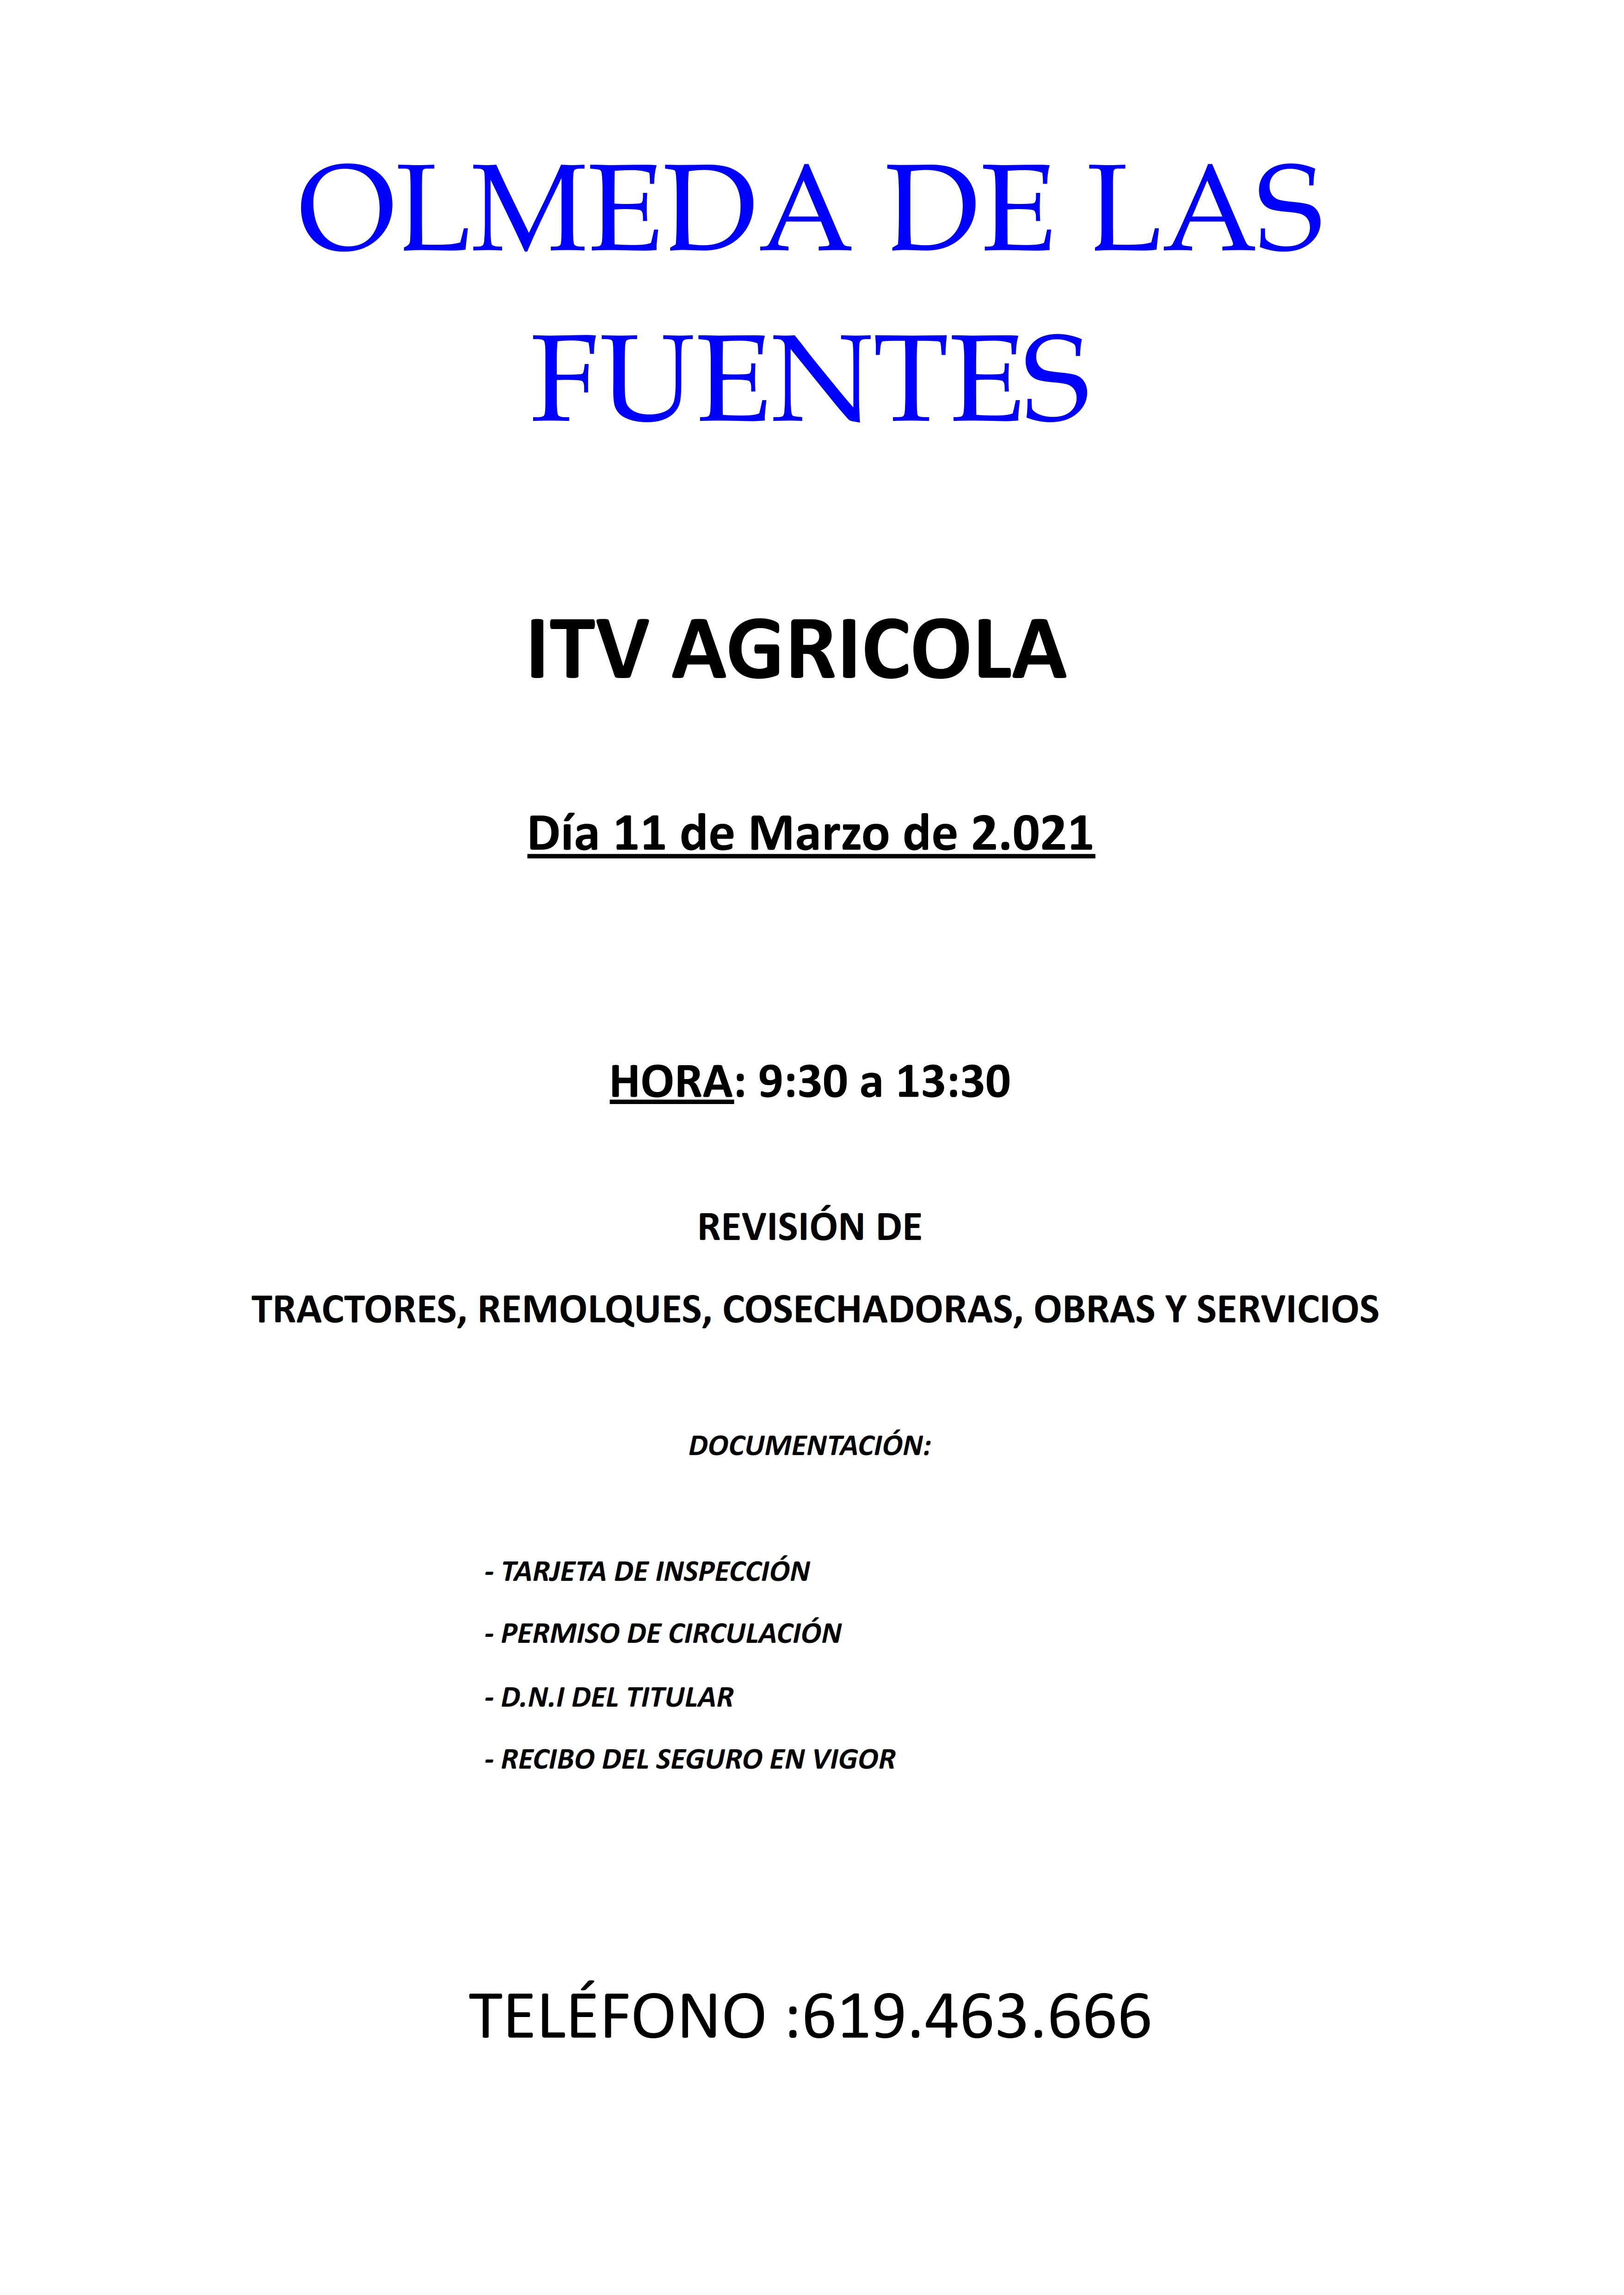 ITV-Olmeda-de-las-Fuentes-001